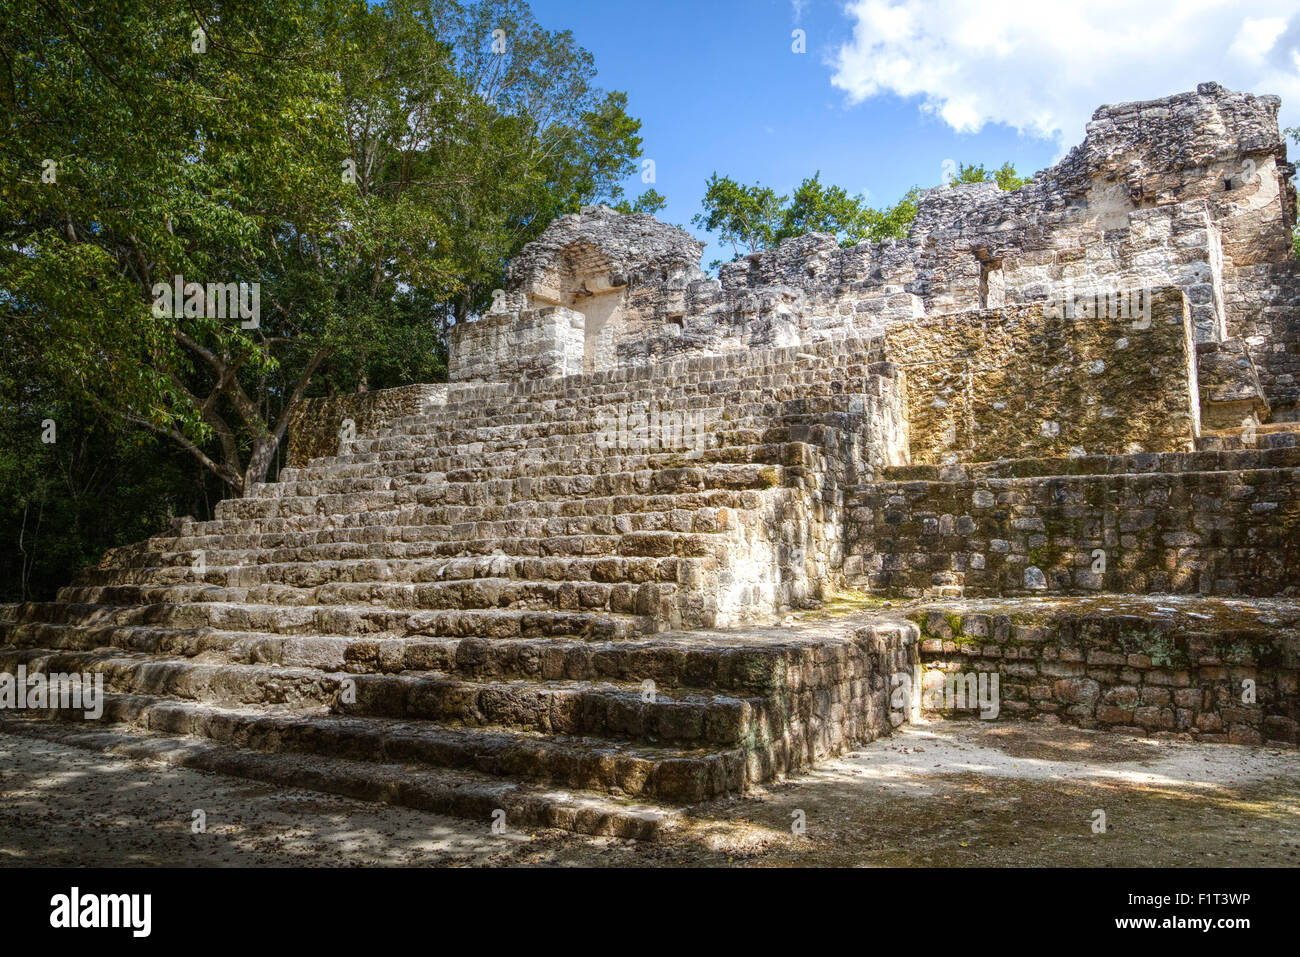 La structure 3, Début de période classique, Site archéologique maya Calakmul, UNESCO, Campeche, Mexique, Amérique du Nord Banque D'Images